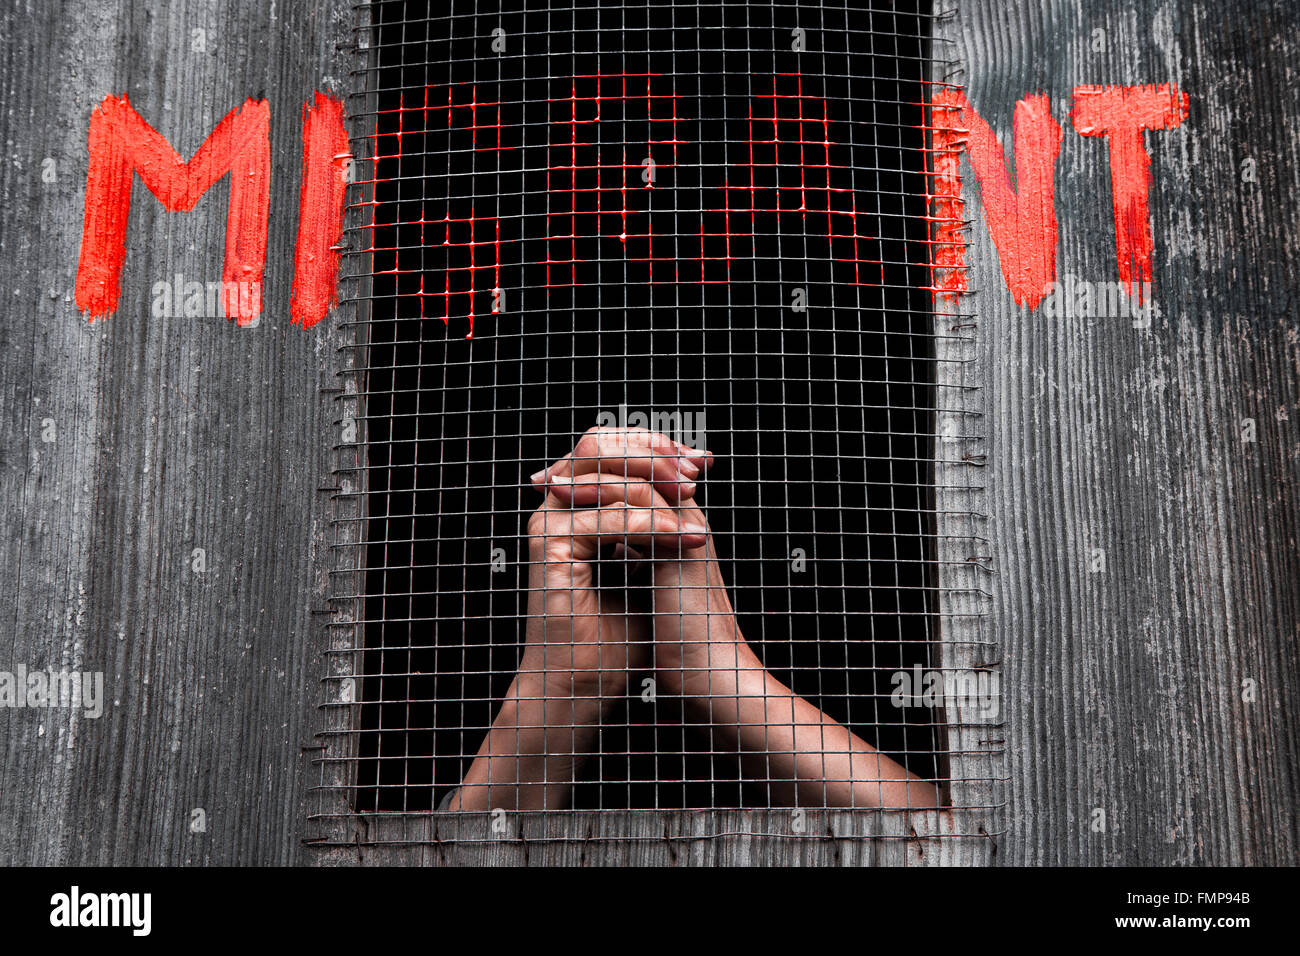 Manos detrás de barras, lectura de graffiti, el apoyo a los refugiados migrantes Foto de stock